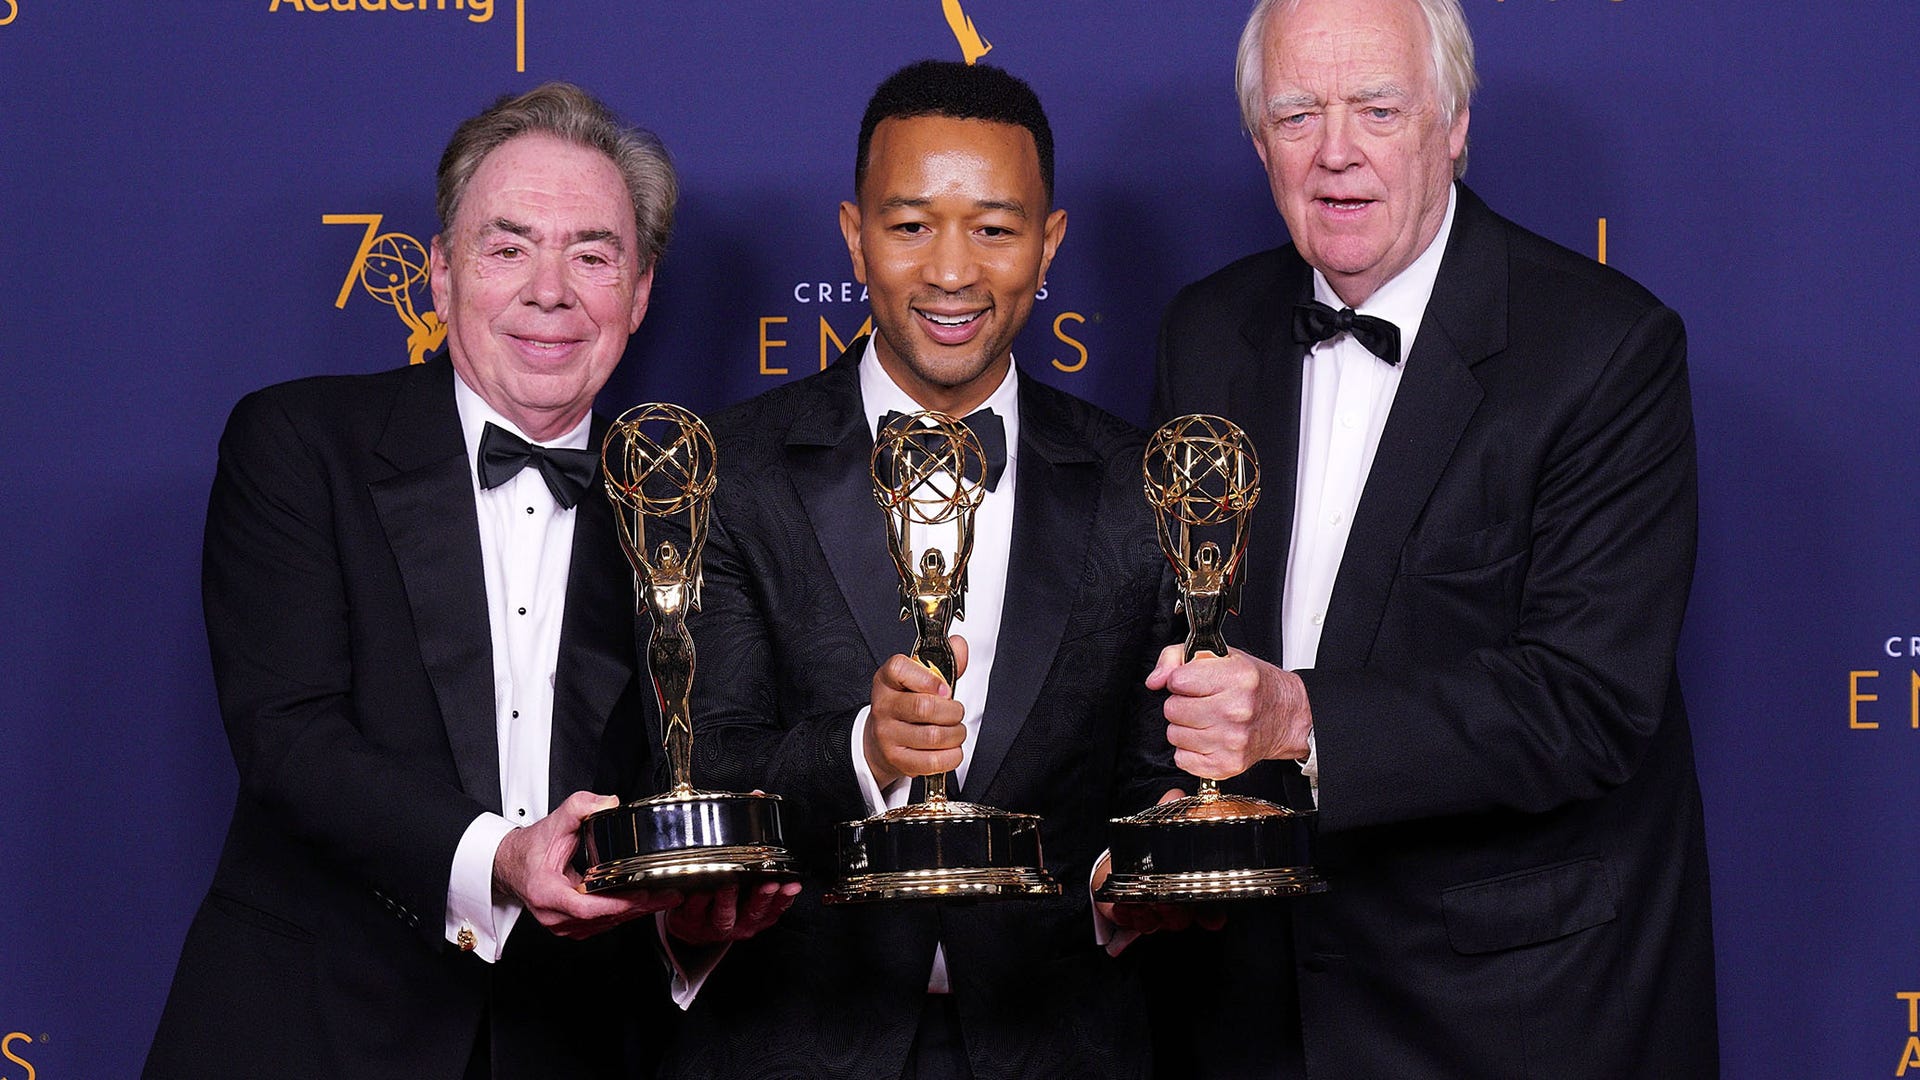 Andrew Lloyd Webber, John Legend and Tim Rice